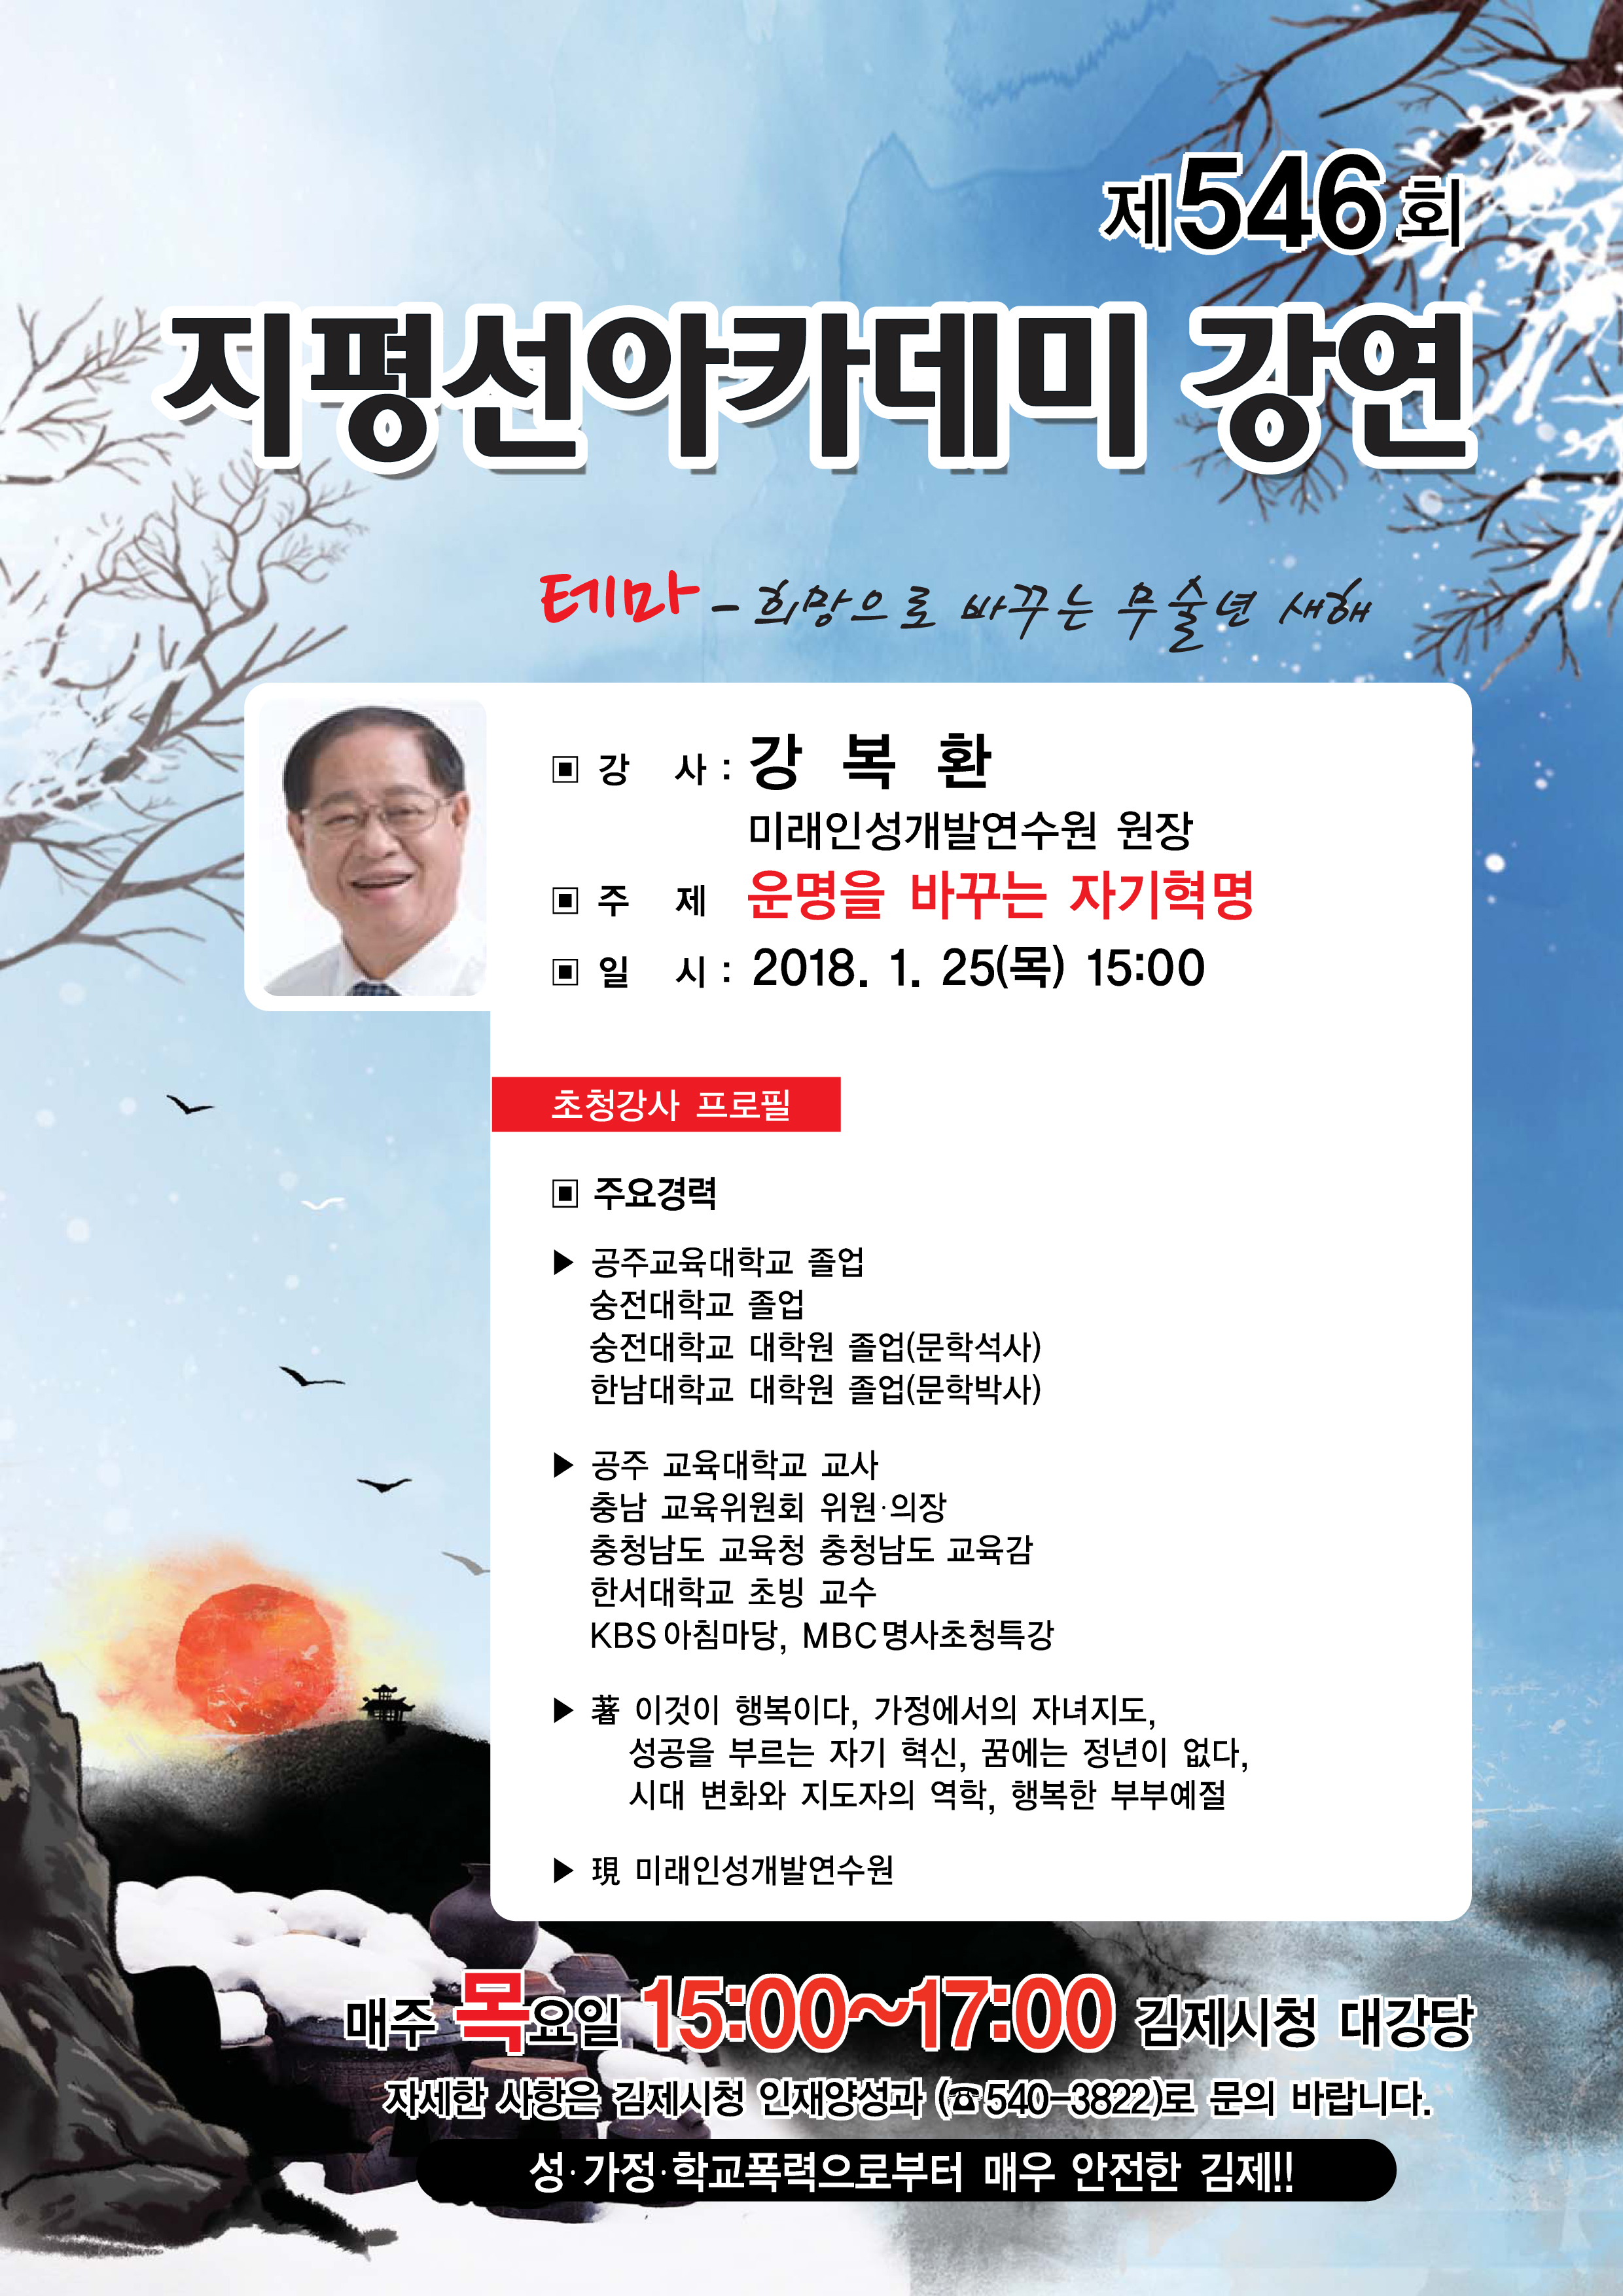 제546회 김제지평선아카데미강연안내